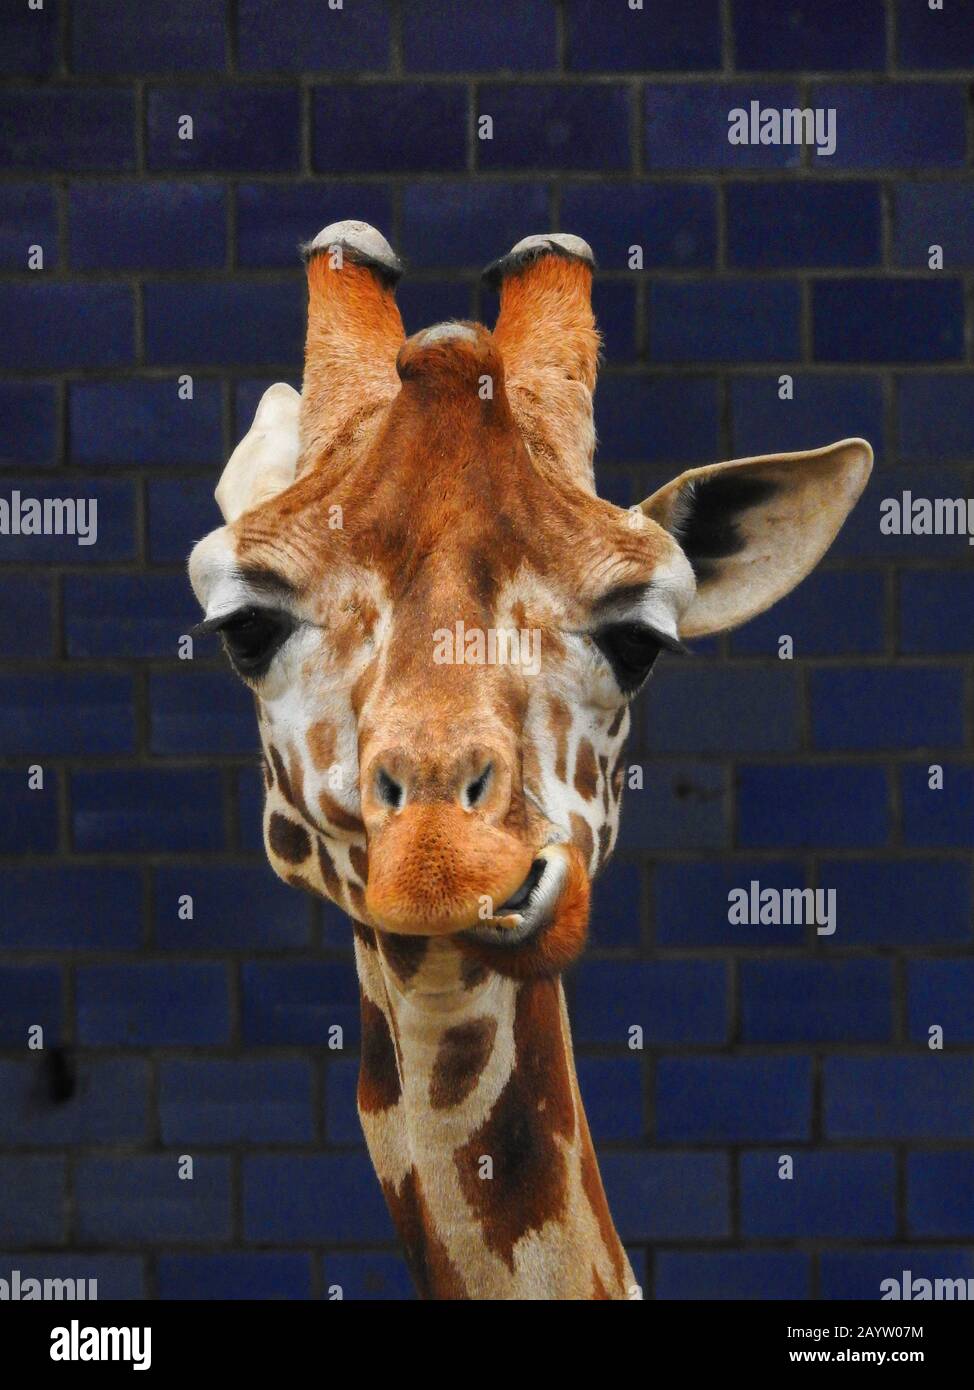 La girafe de Rothschild, la girafe de Rothschild, la girafe de Baringo, la girafe ougandaise (Giraffa camelopardalis rothschild), portrait, Afrique Banque D'Images